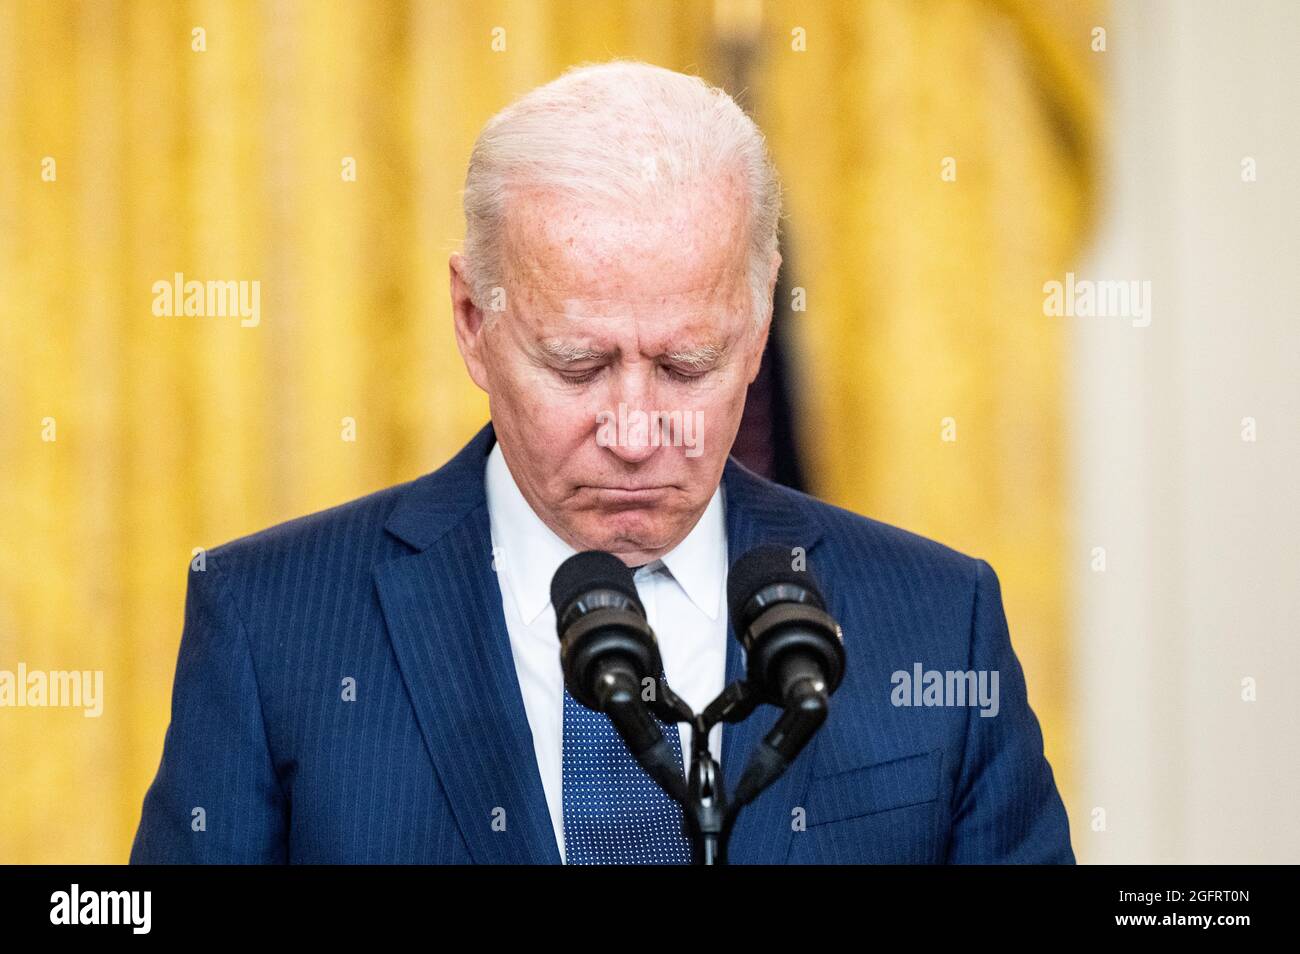 Washington, États-Unis. 26 août 2021. Le président Joe Biden observe un moment de silence pour les victimes de l'attaque terroriste à l'aéroport international Hamid Karzaï de Kaboul, en Afghanistan, pour les militaires américains et les victimes afghanes tuées et blessées lors de l'attaque. Crédit : SOPA Images Limited/Alamy Live News Banque D'Images